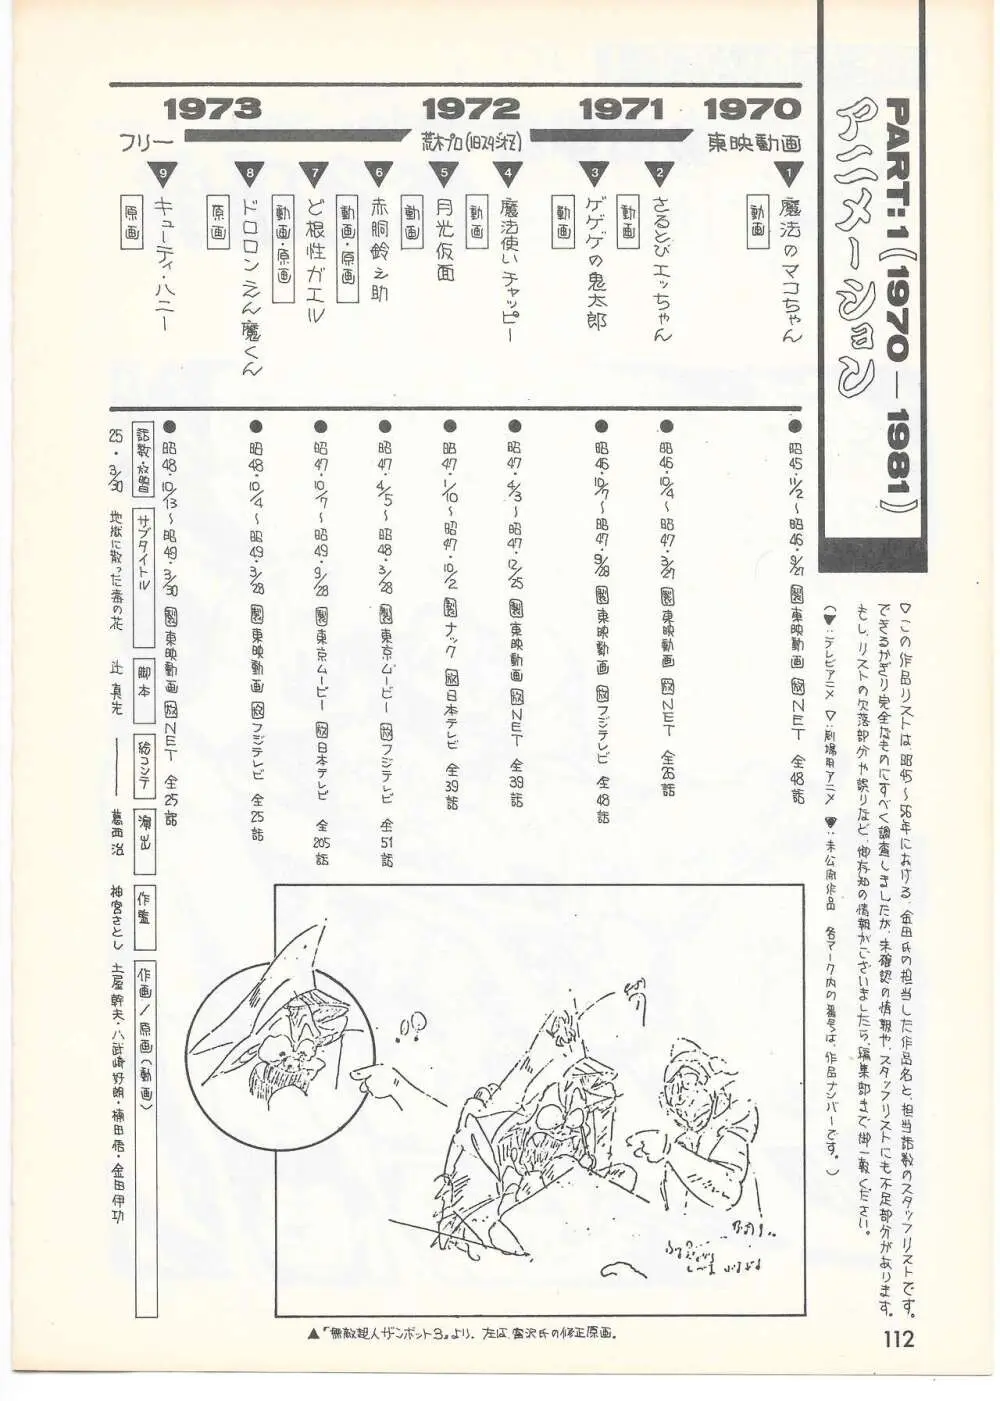 THE ANIMATOR 1 金田伊功特集号 107ページ